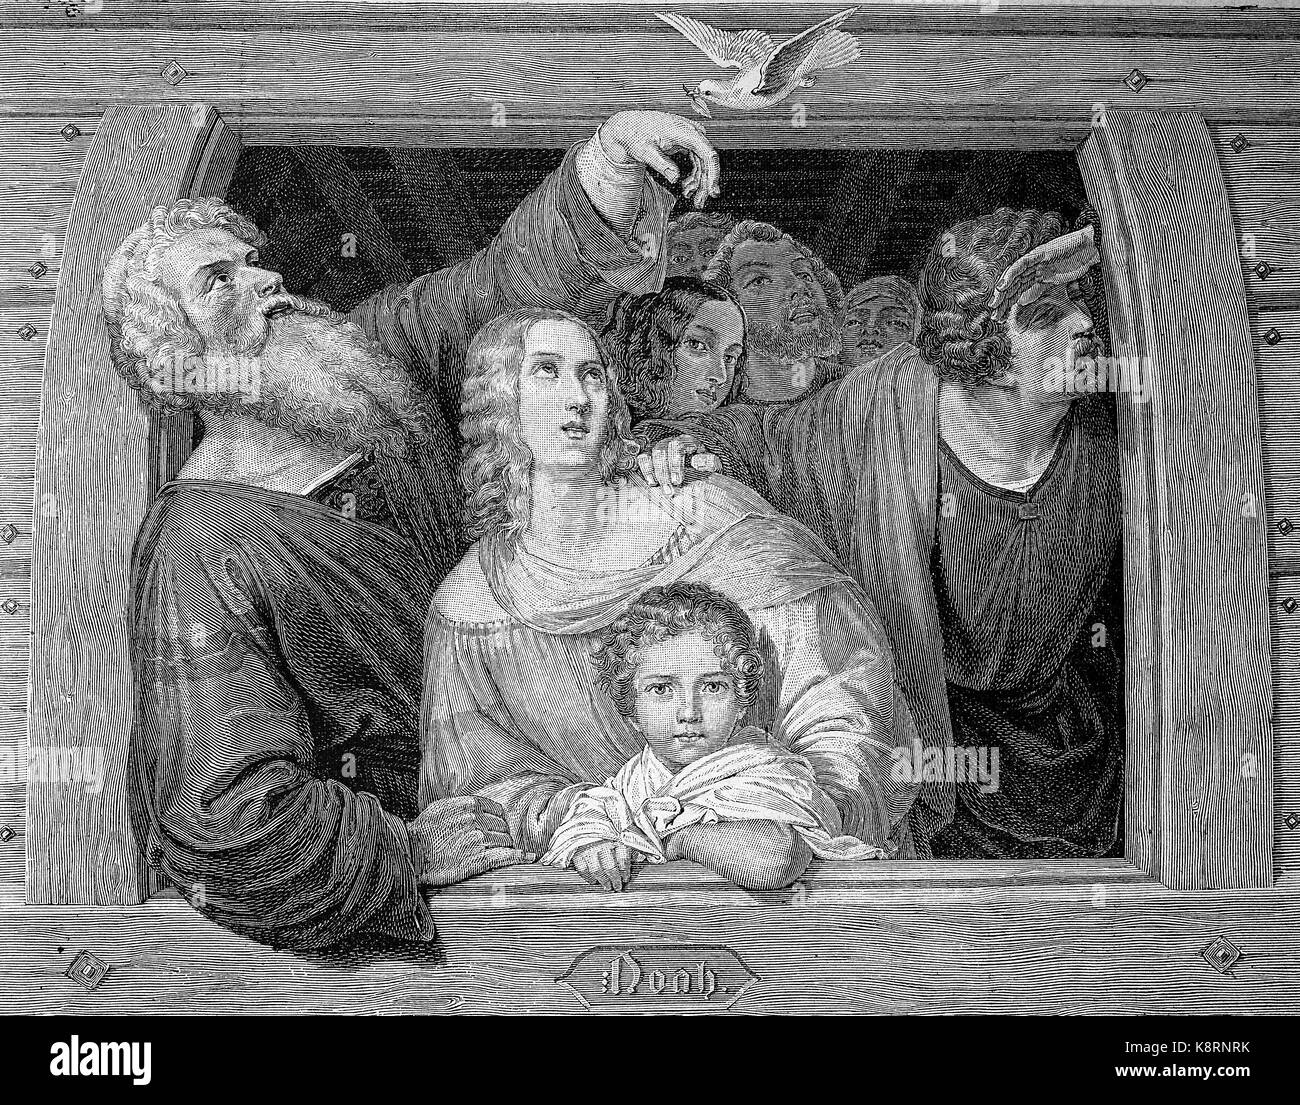 Noah und seine Familie empfängt die Taube bei ihrer Retour sur l'Arche de Noé, donnant le geste d'orant comme la colombe revient, l'amélioration numérique reproduction d'une gravure sur bois, publié dans le 19e siècle Banque D'Images